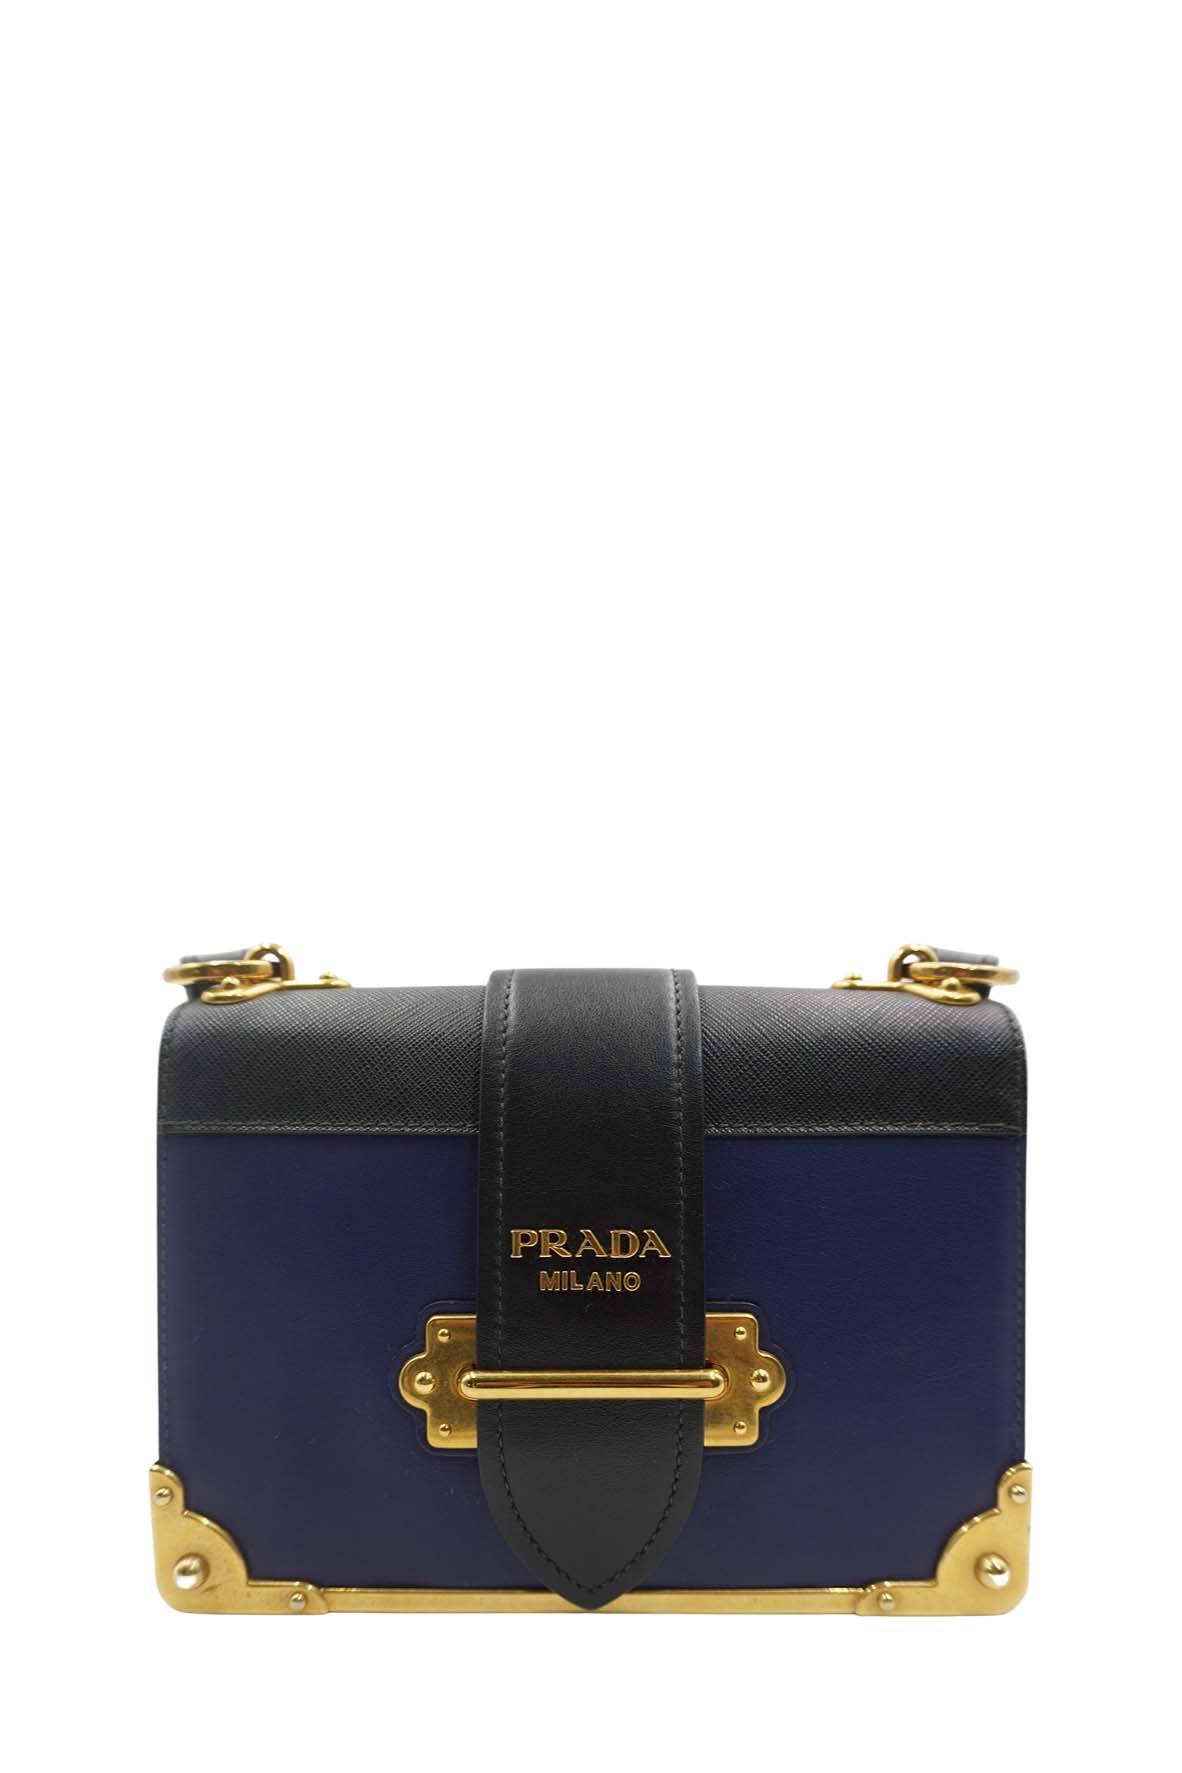 Prada Blue Shoulder Bags | Mercari